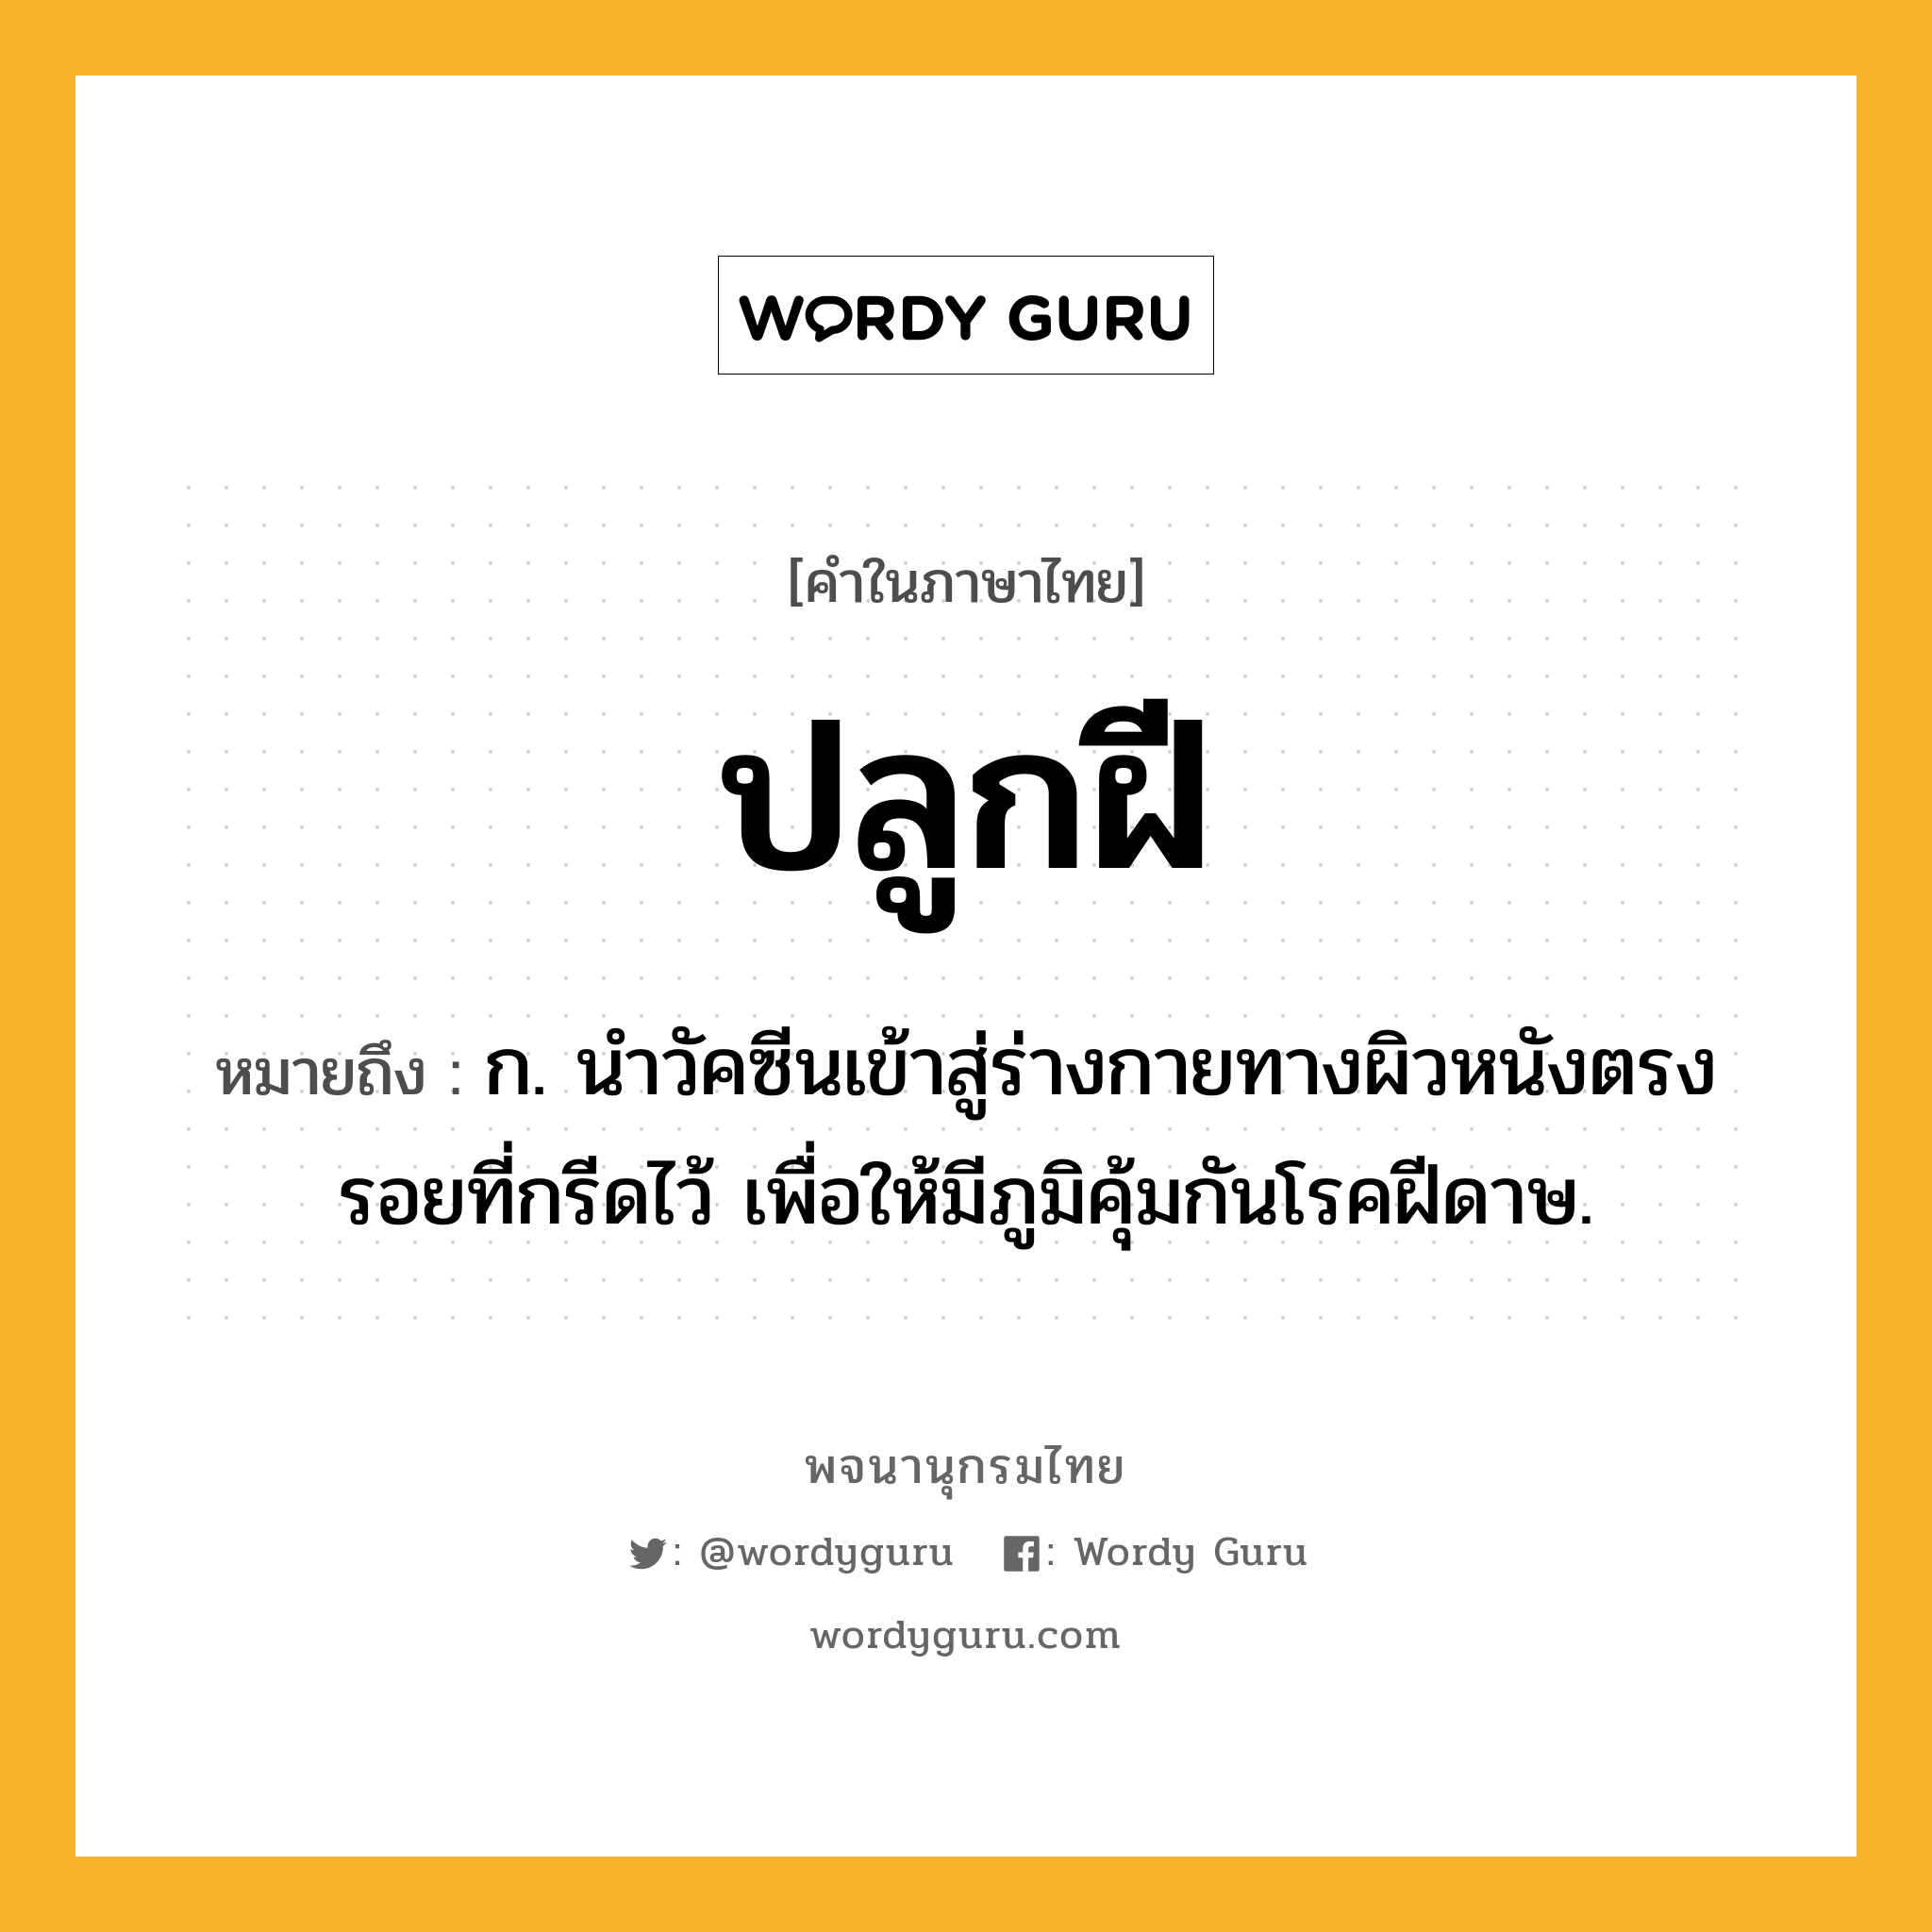 ปลูกฝี ความหมาย หมายถึงอะไร?, คำในภาษาไทย ปลูกฝี หมายถึง ก. นําวัคซีนเข้าสู่ร่างกายทางผิวหนังตรงรอยที่กรีดไว้ เพื่อให้มีภูมิคุ้มกันโรคฝีดาษ.